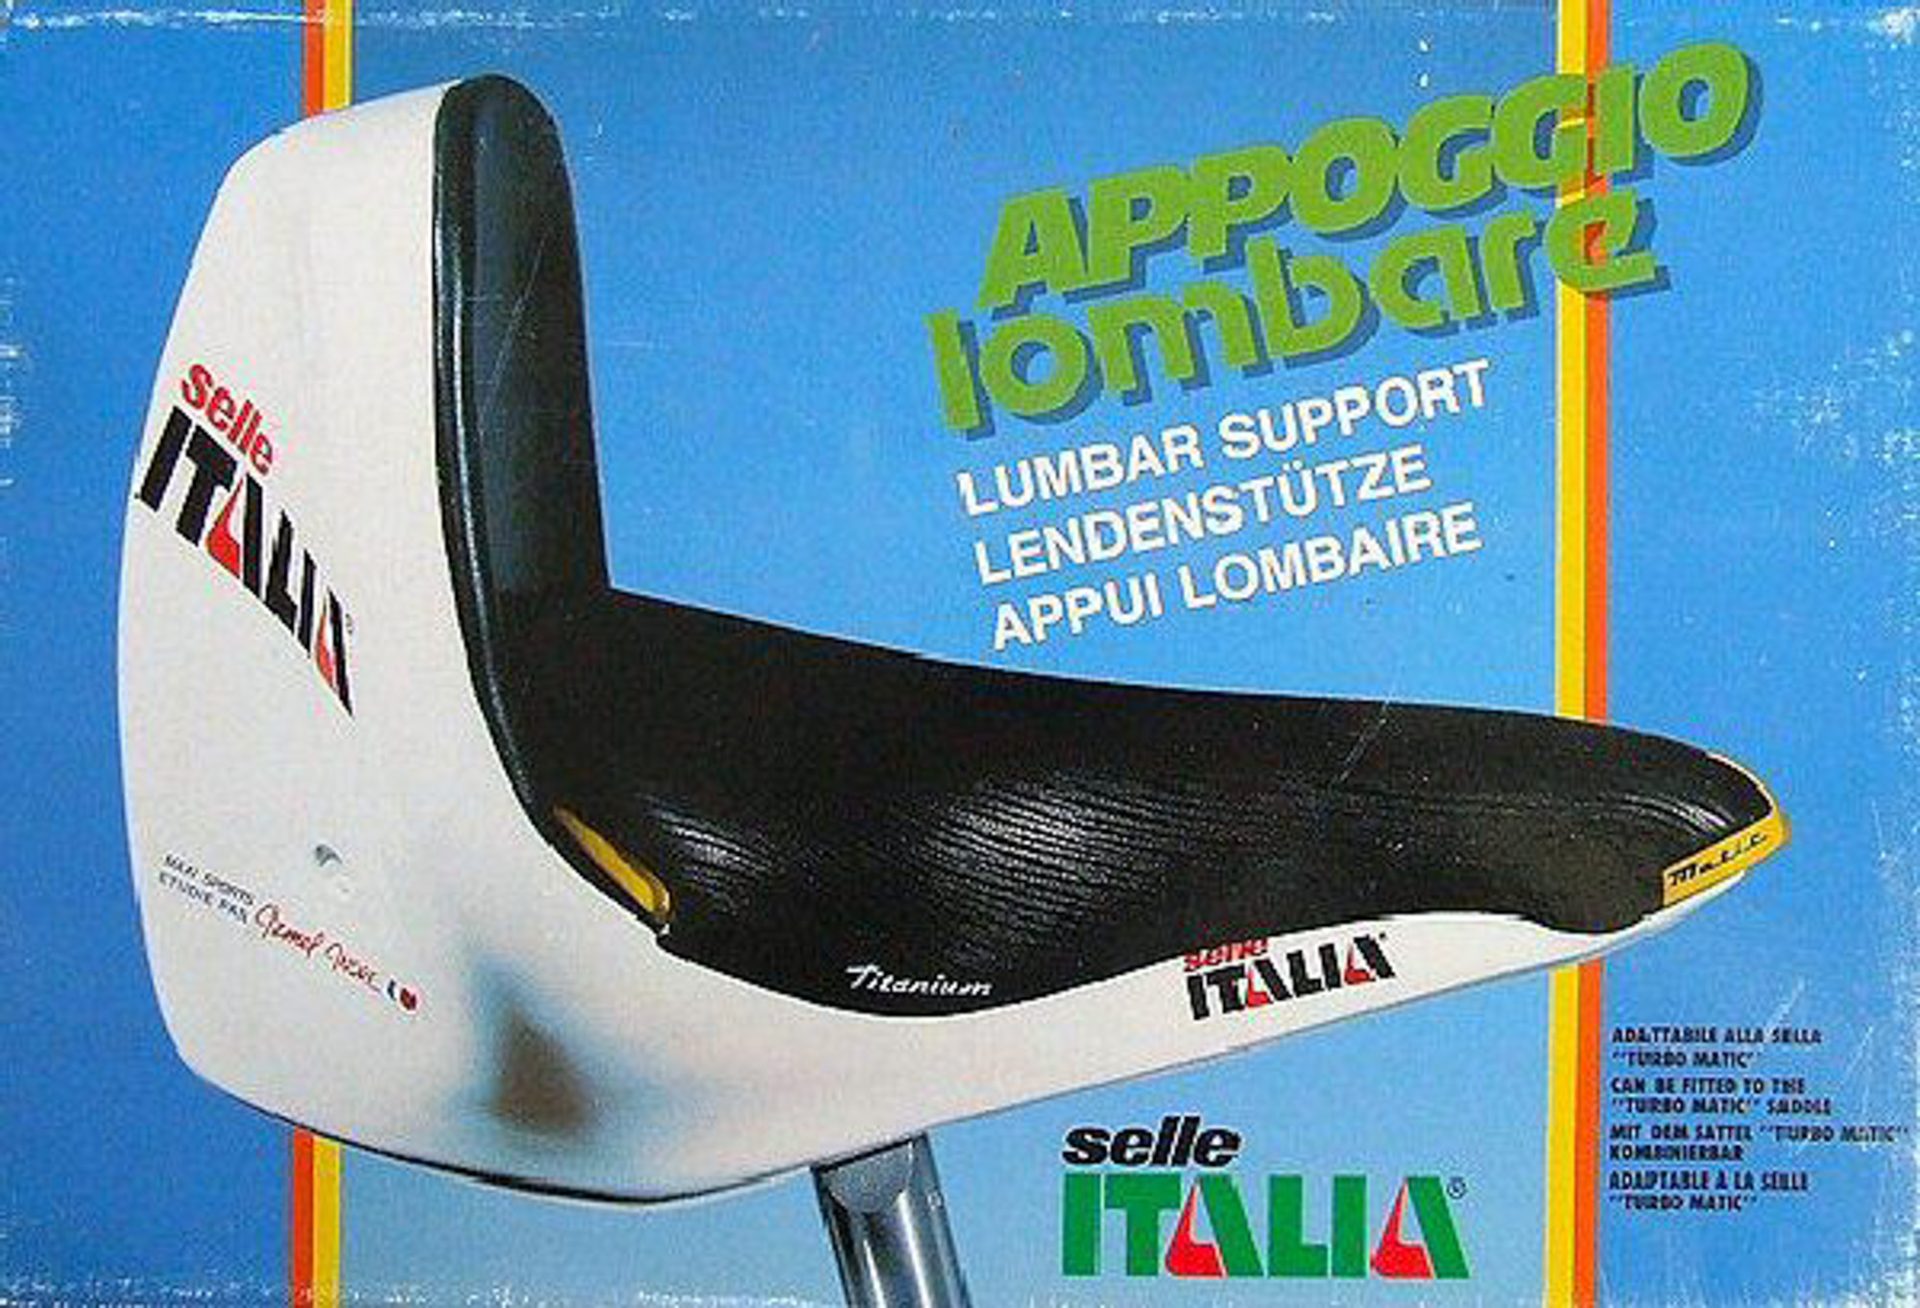 An advertisement for the Selle Italia Apoggio Lombare.